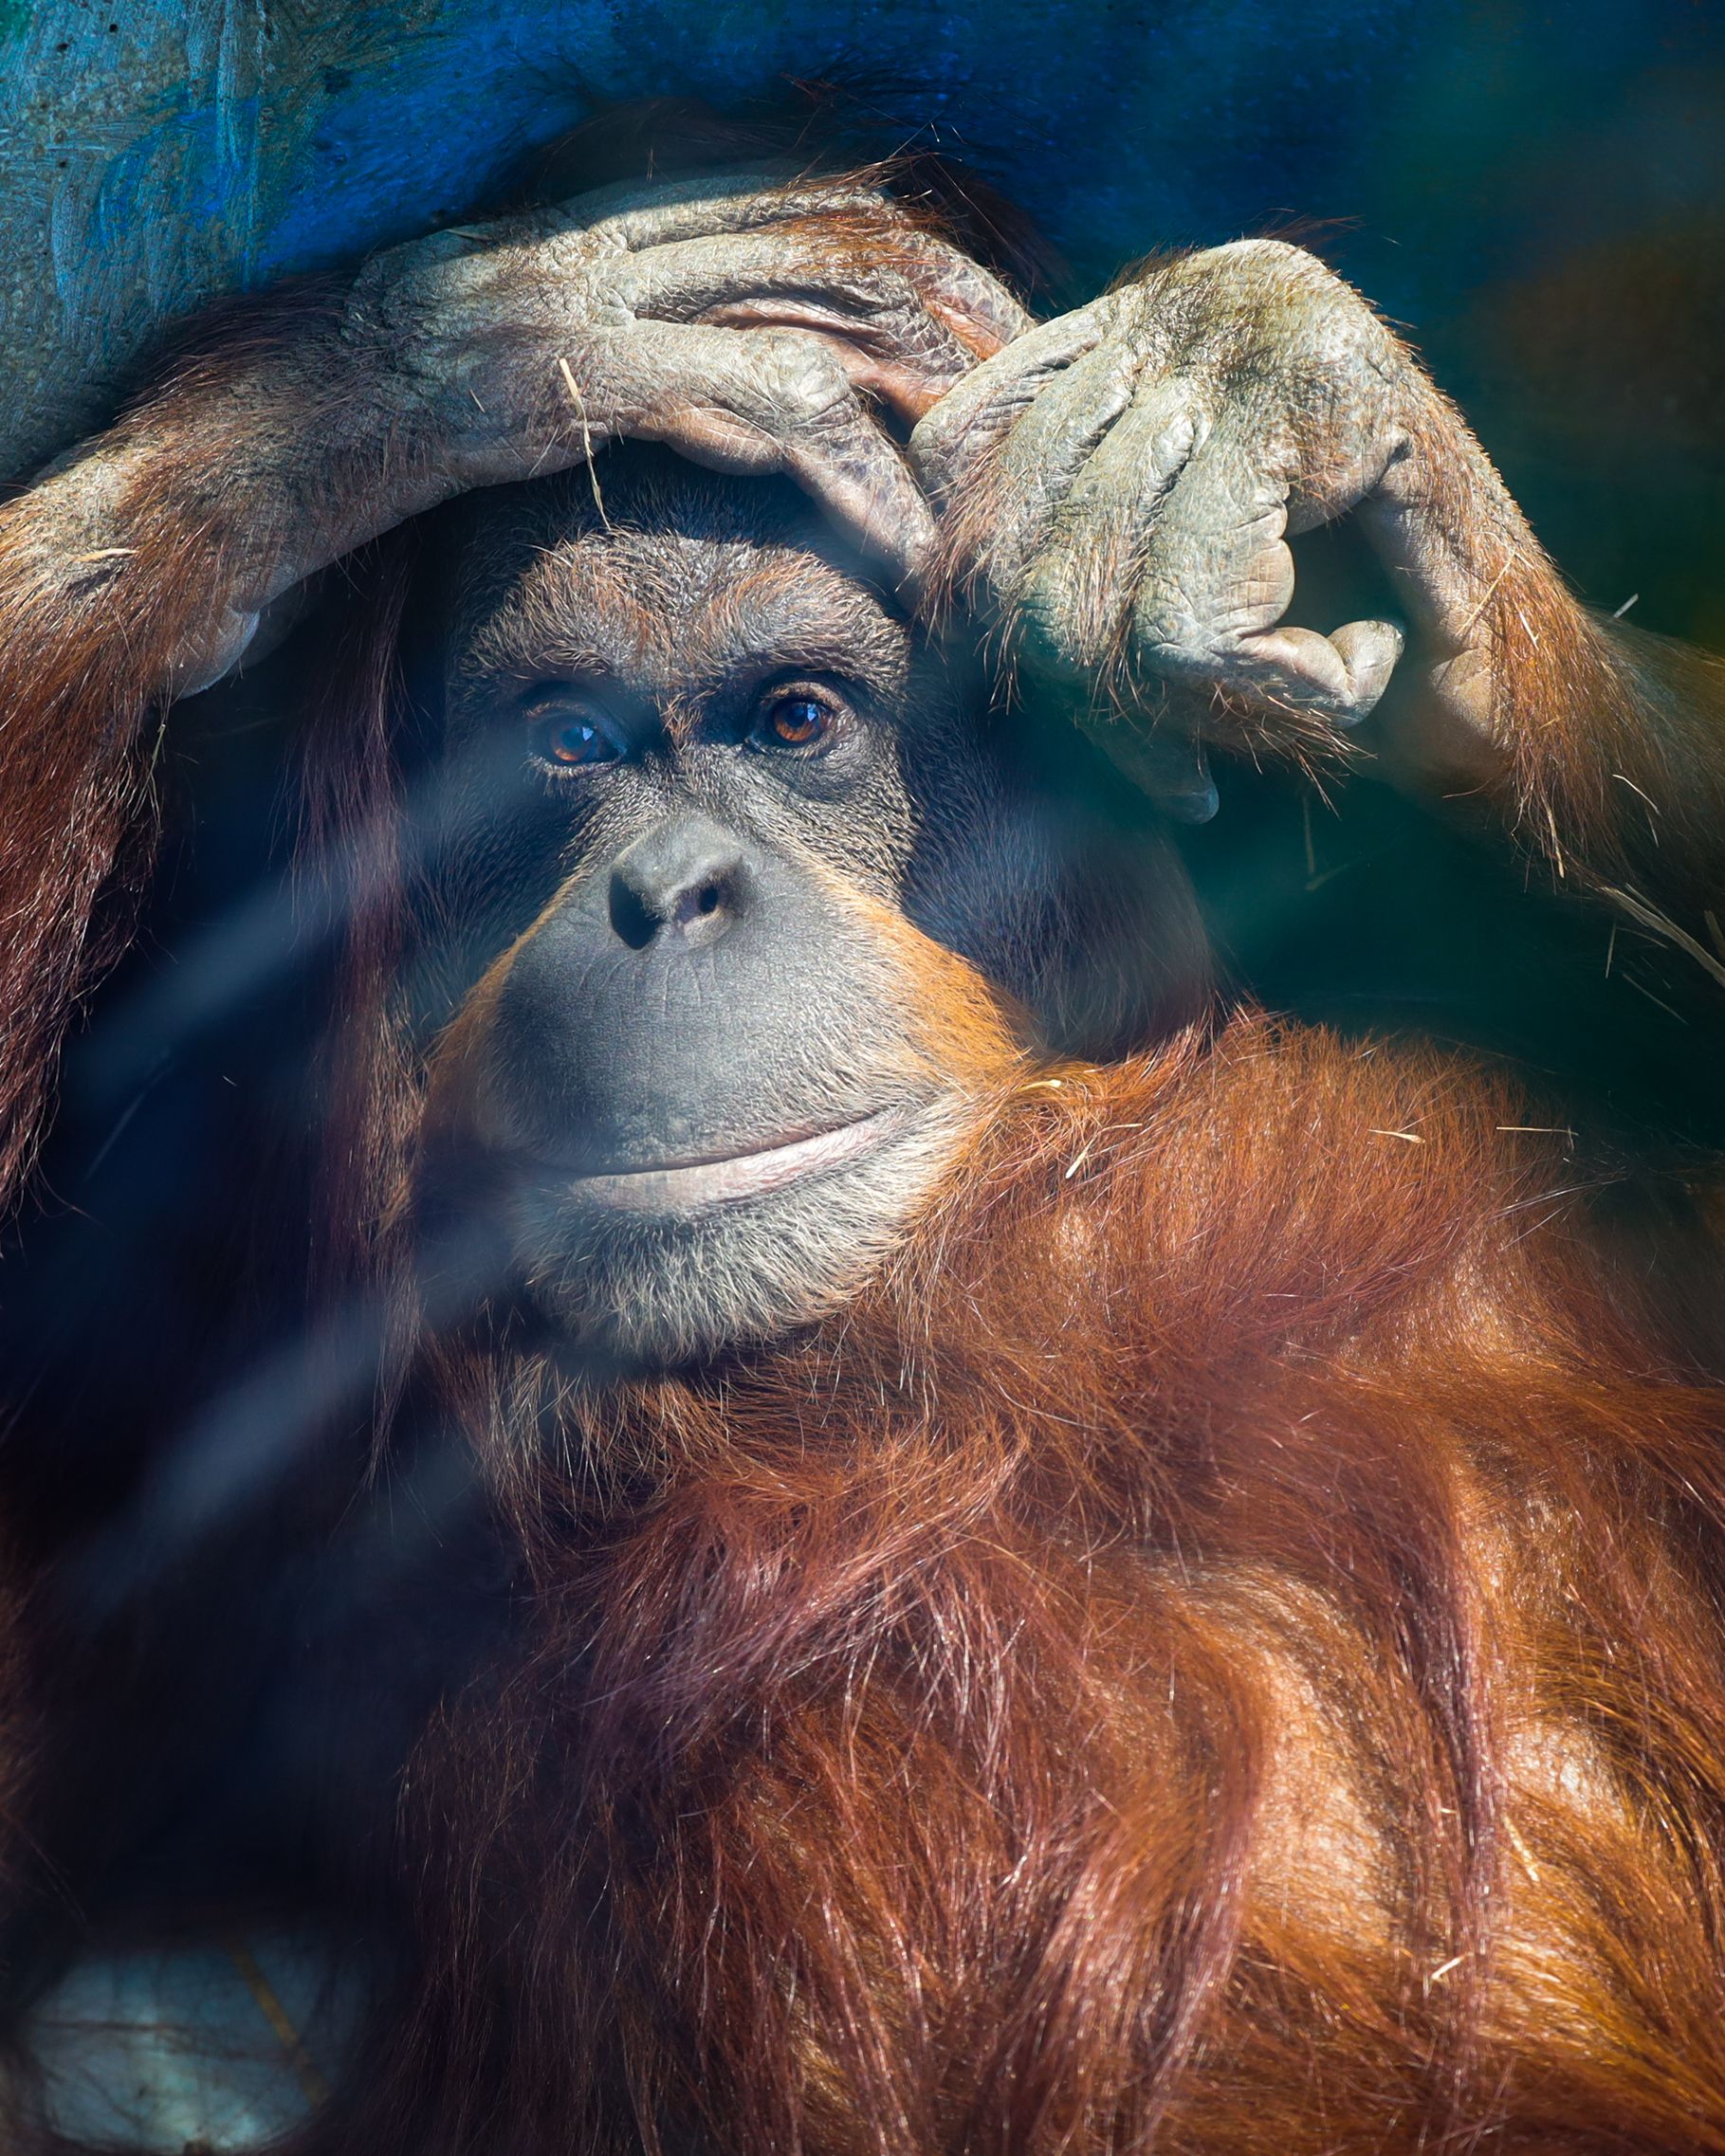 Orangutan, Melbourne Zoo 